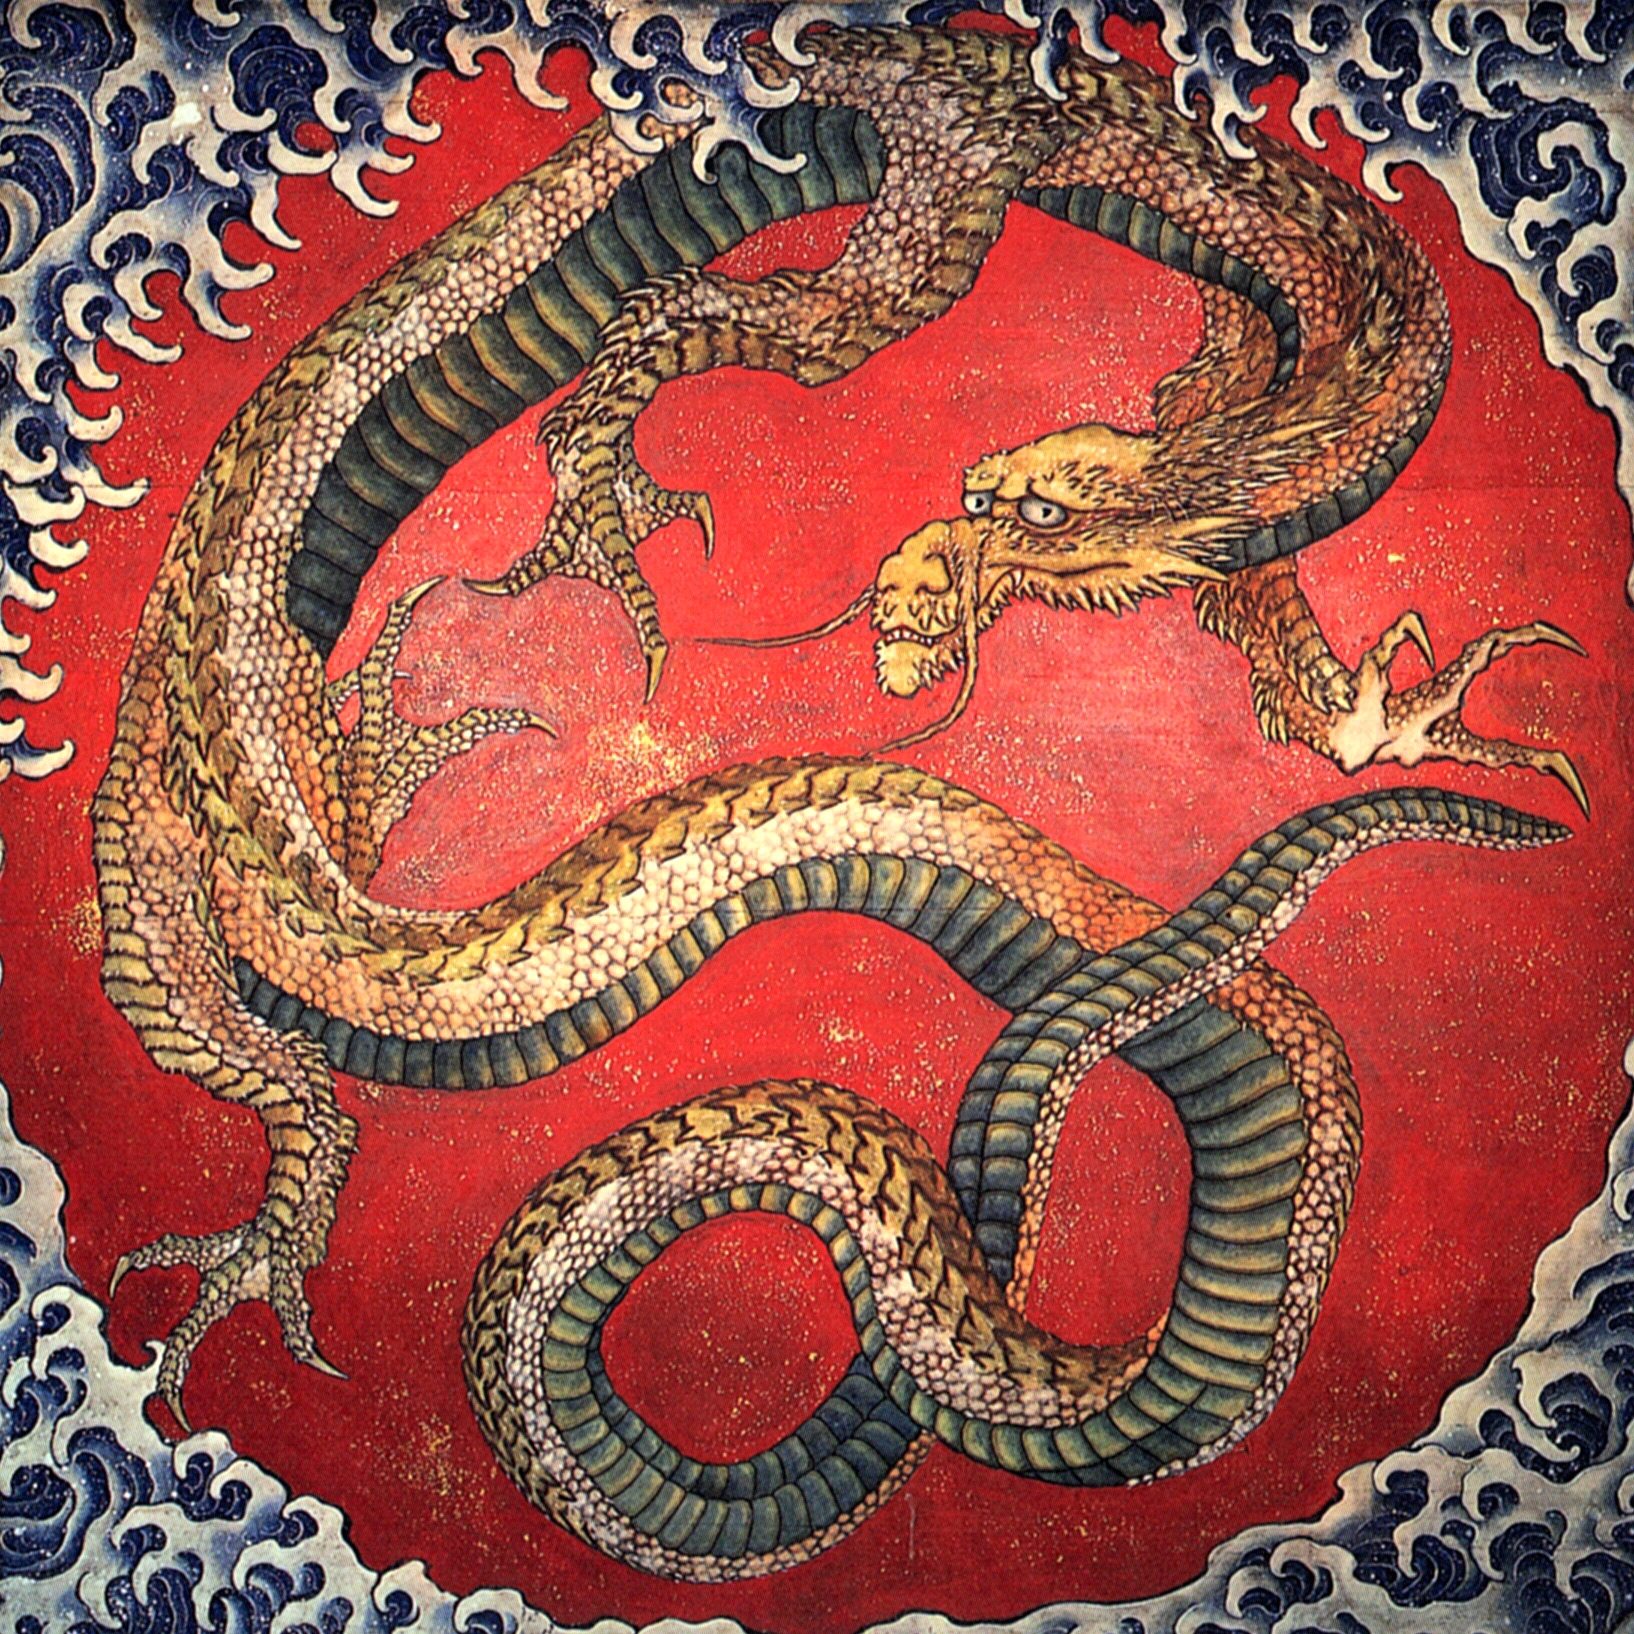 ry-japanischer-drache-drachen-wiki-fandom